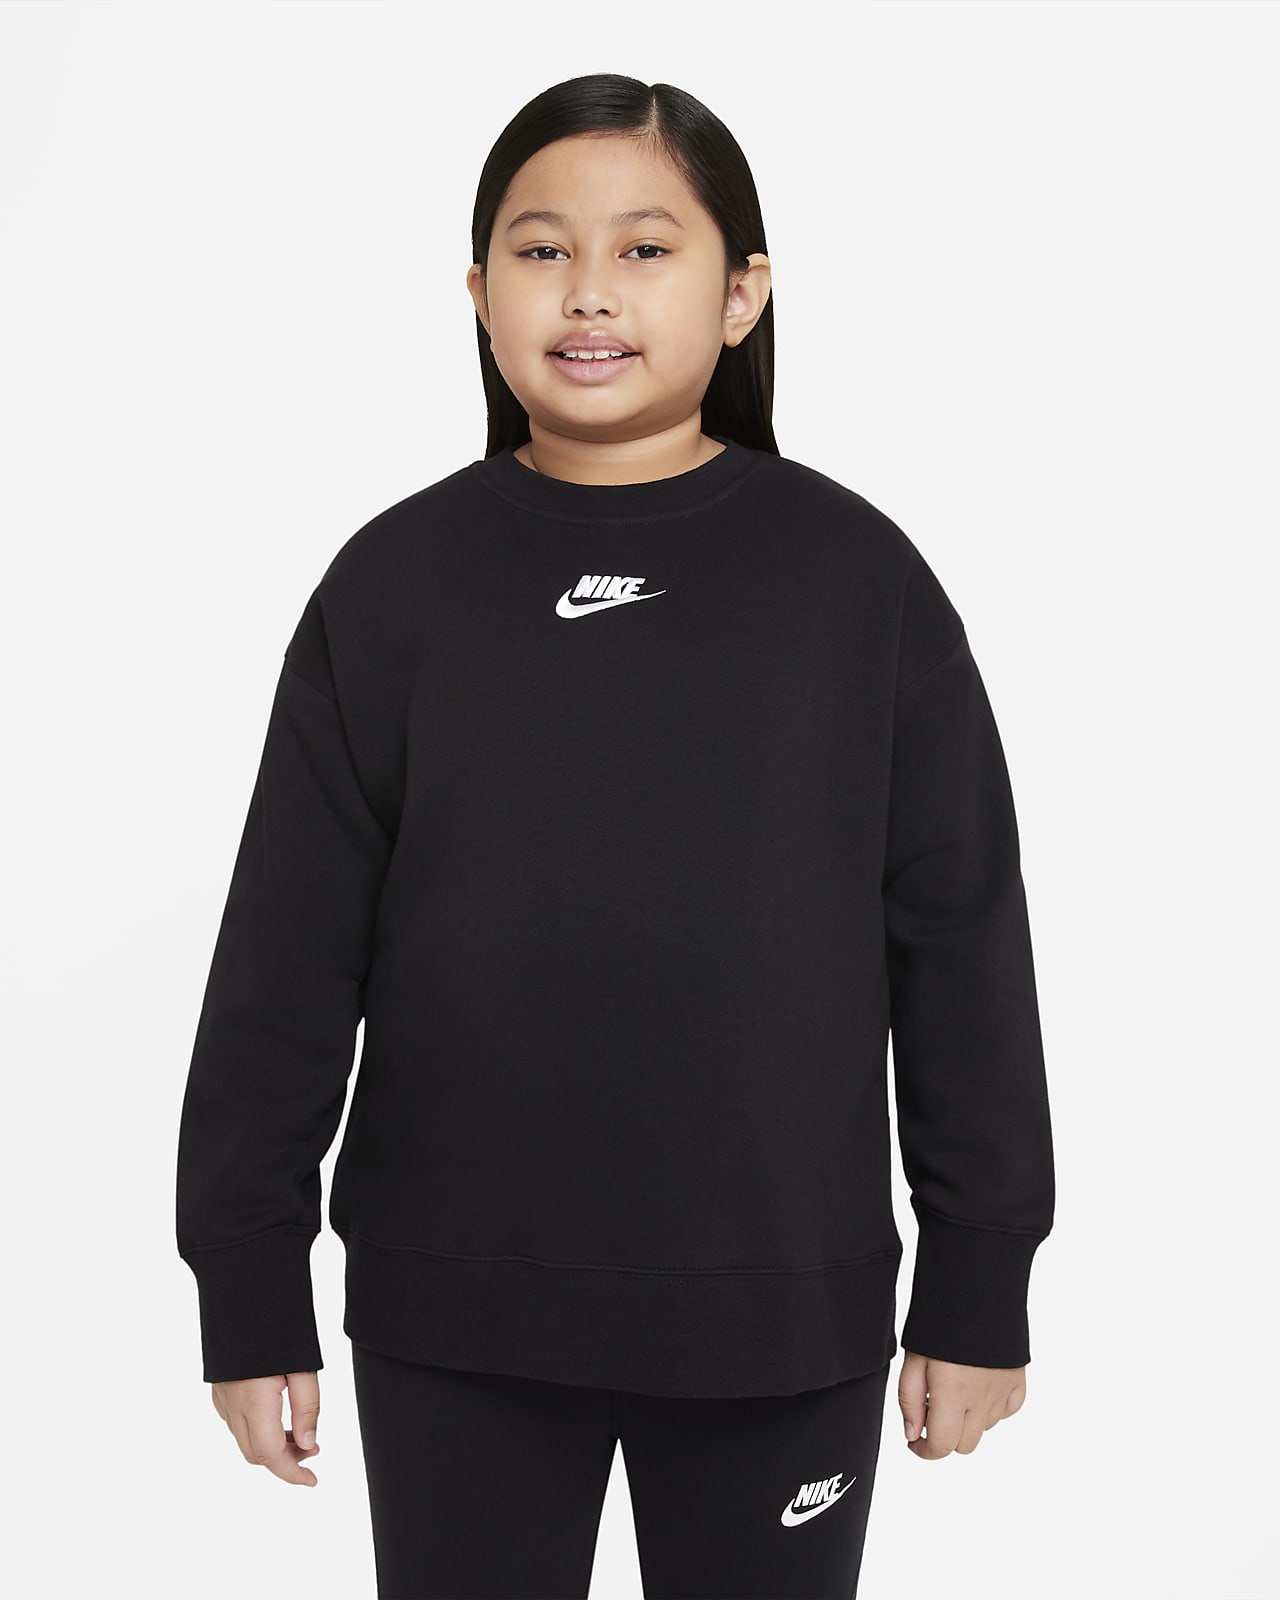 Nike Sportswear Club Fleece Older Kids' (Girls') Crew (Extended Size)